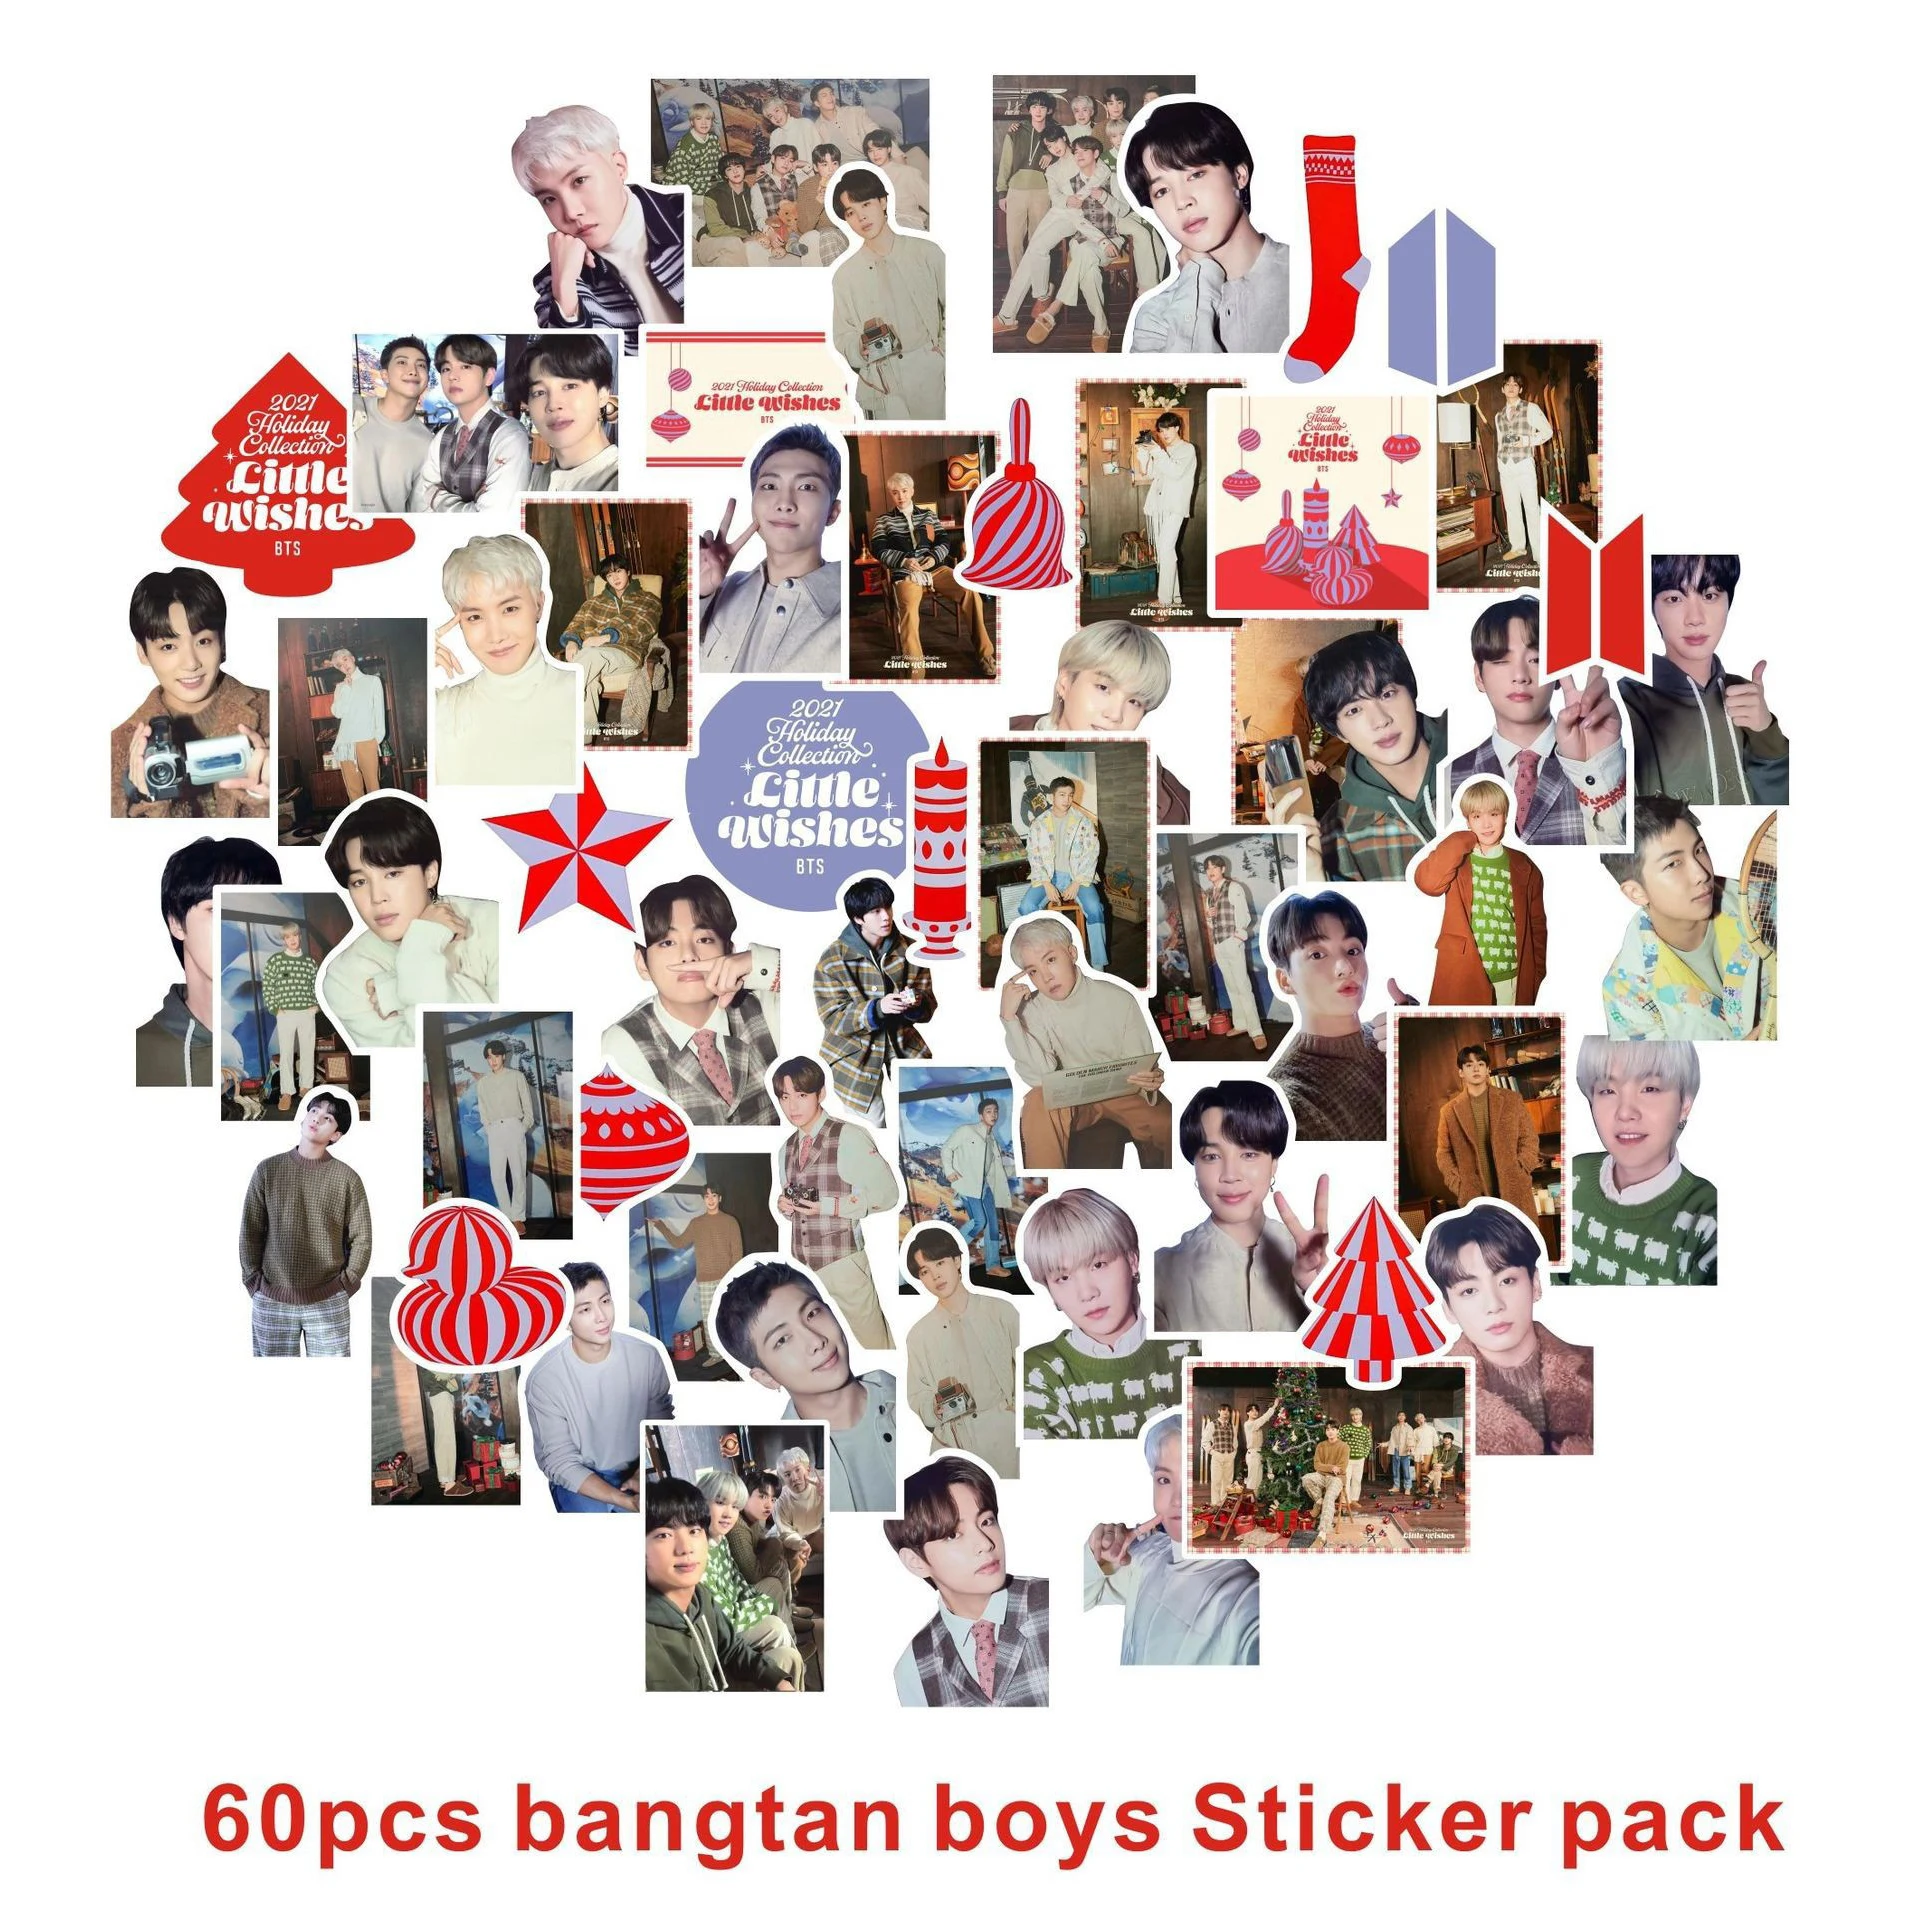 

Коллекция 100 года, стикеры для детей в стиле K-POP, оригинальный альбом в стиле K-POP с милыми фотографиями для мальчиков, наклейки для корейских ...